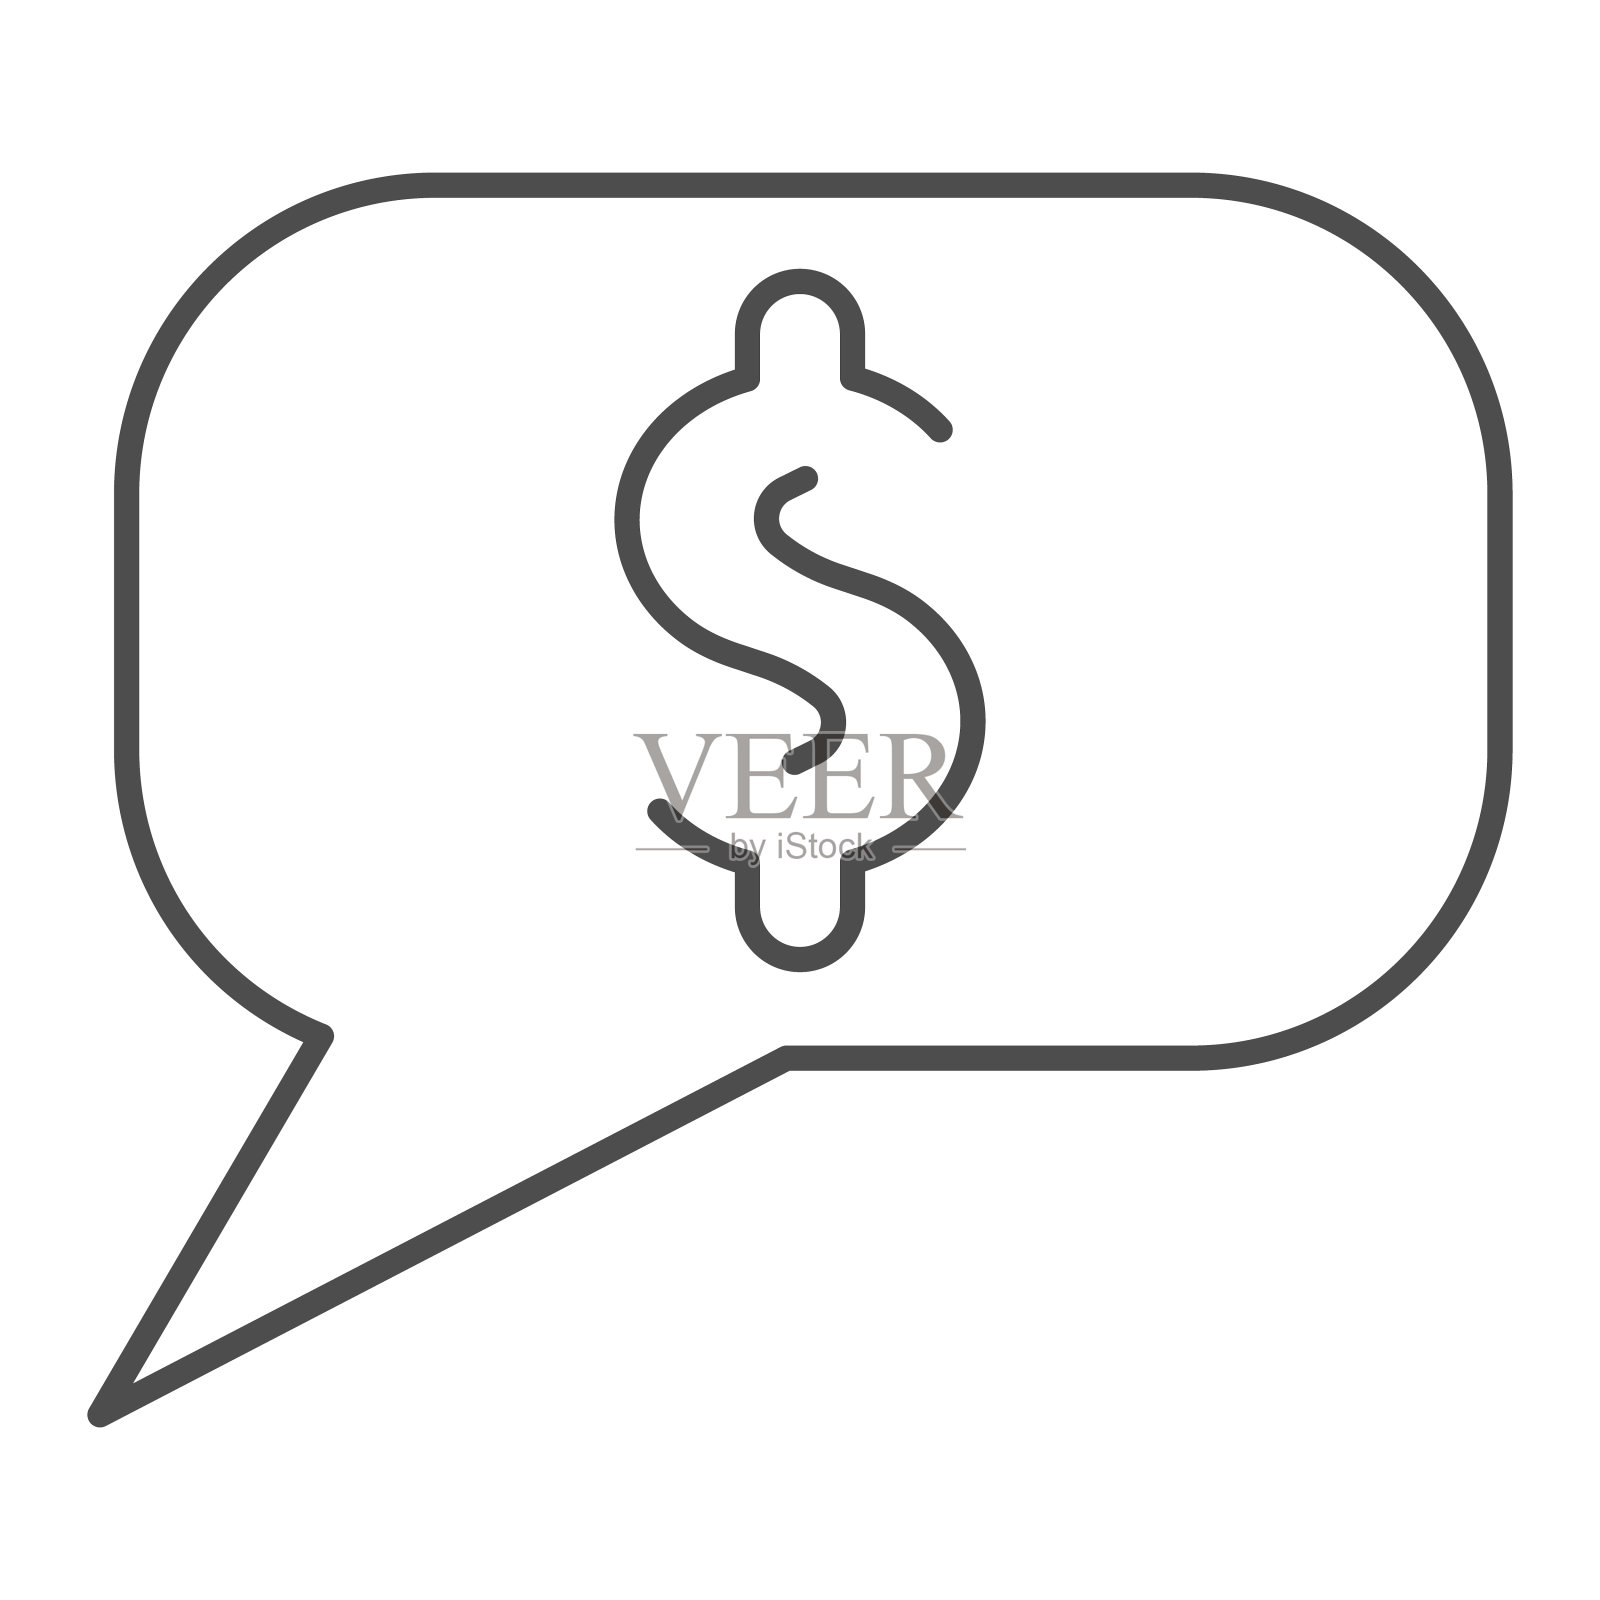 对话气泡与美元细线图标。货币，商业或金融聊天符号，轮廓风格的象形文字上的白色背景。手机概念和网页设计的金钱标志。矢量图形。插画图片素材